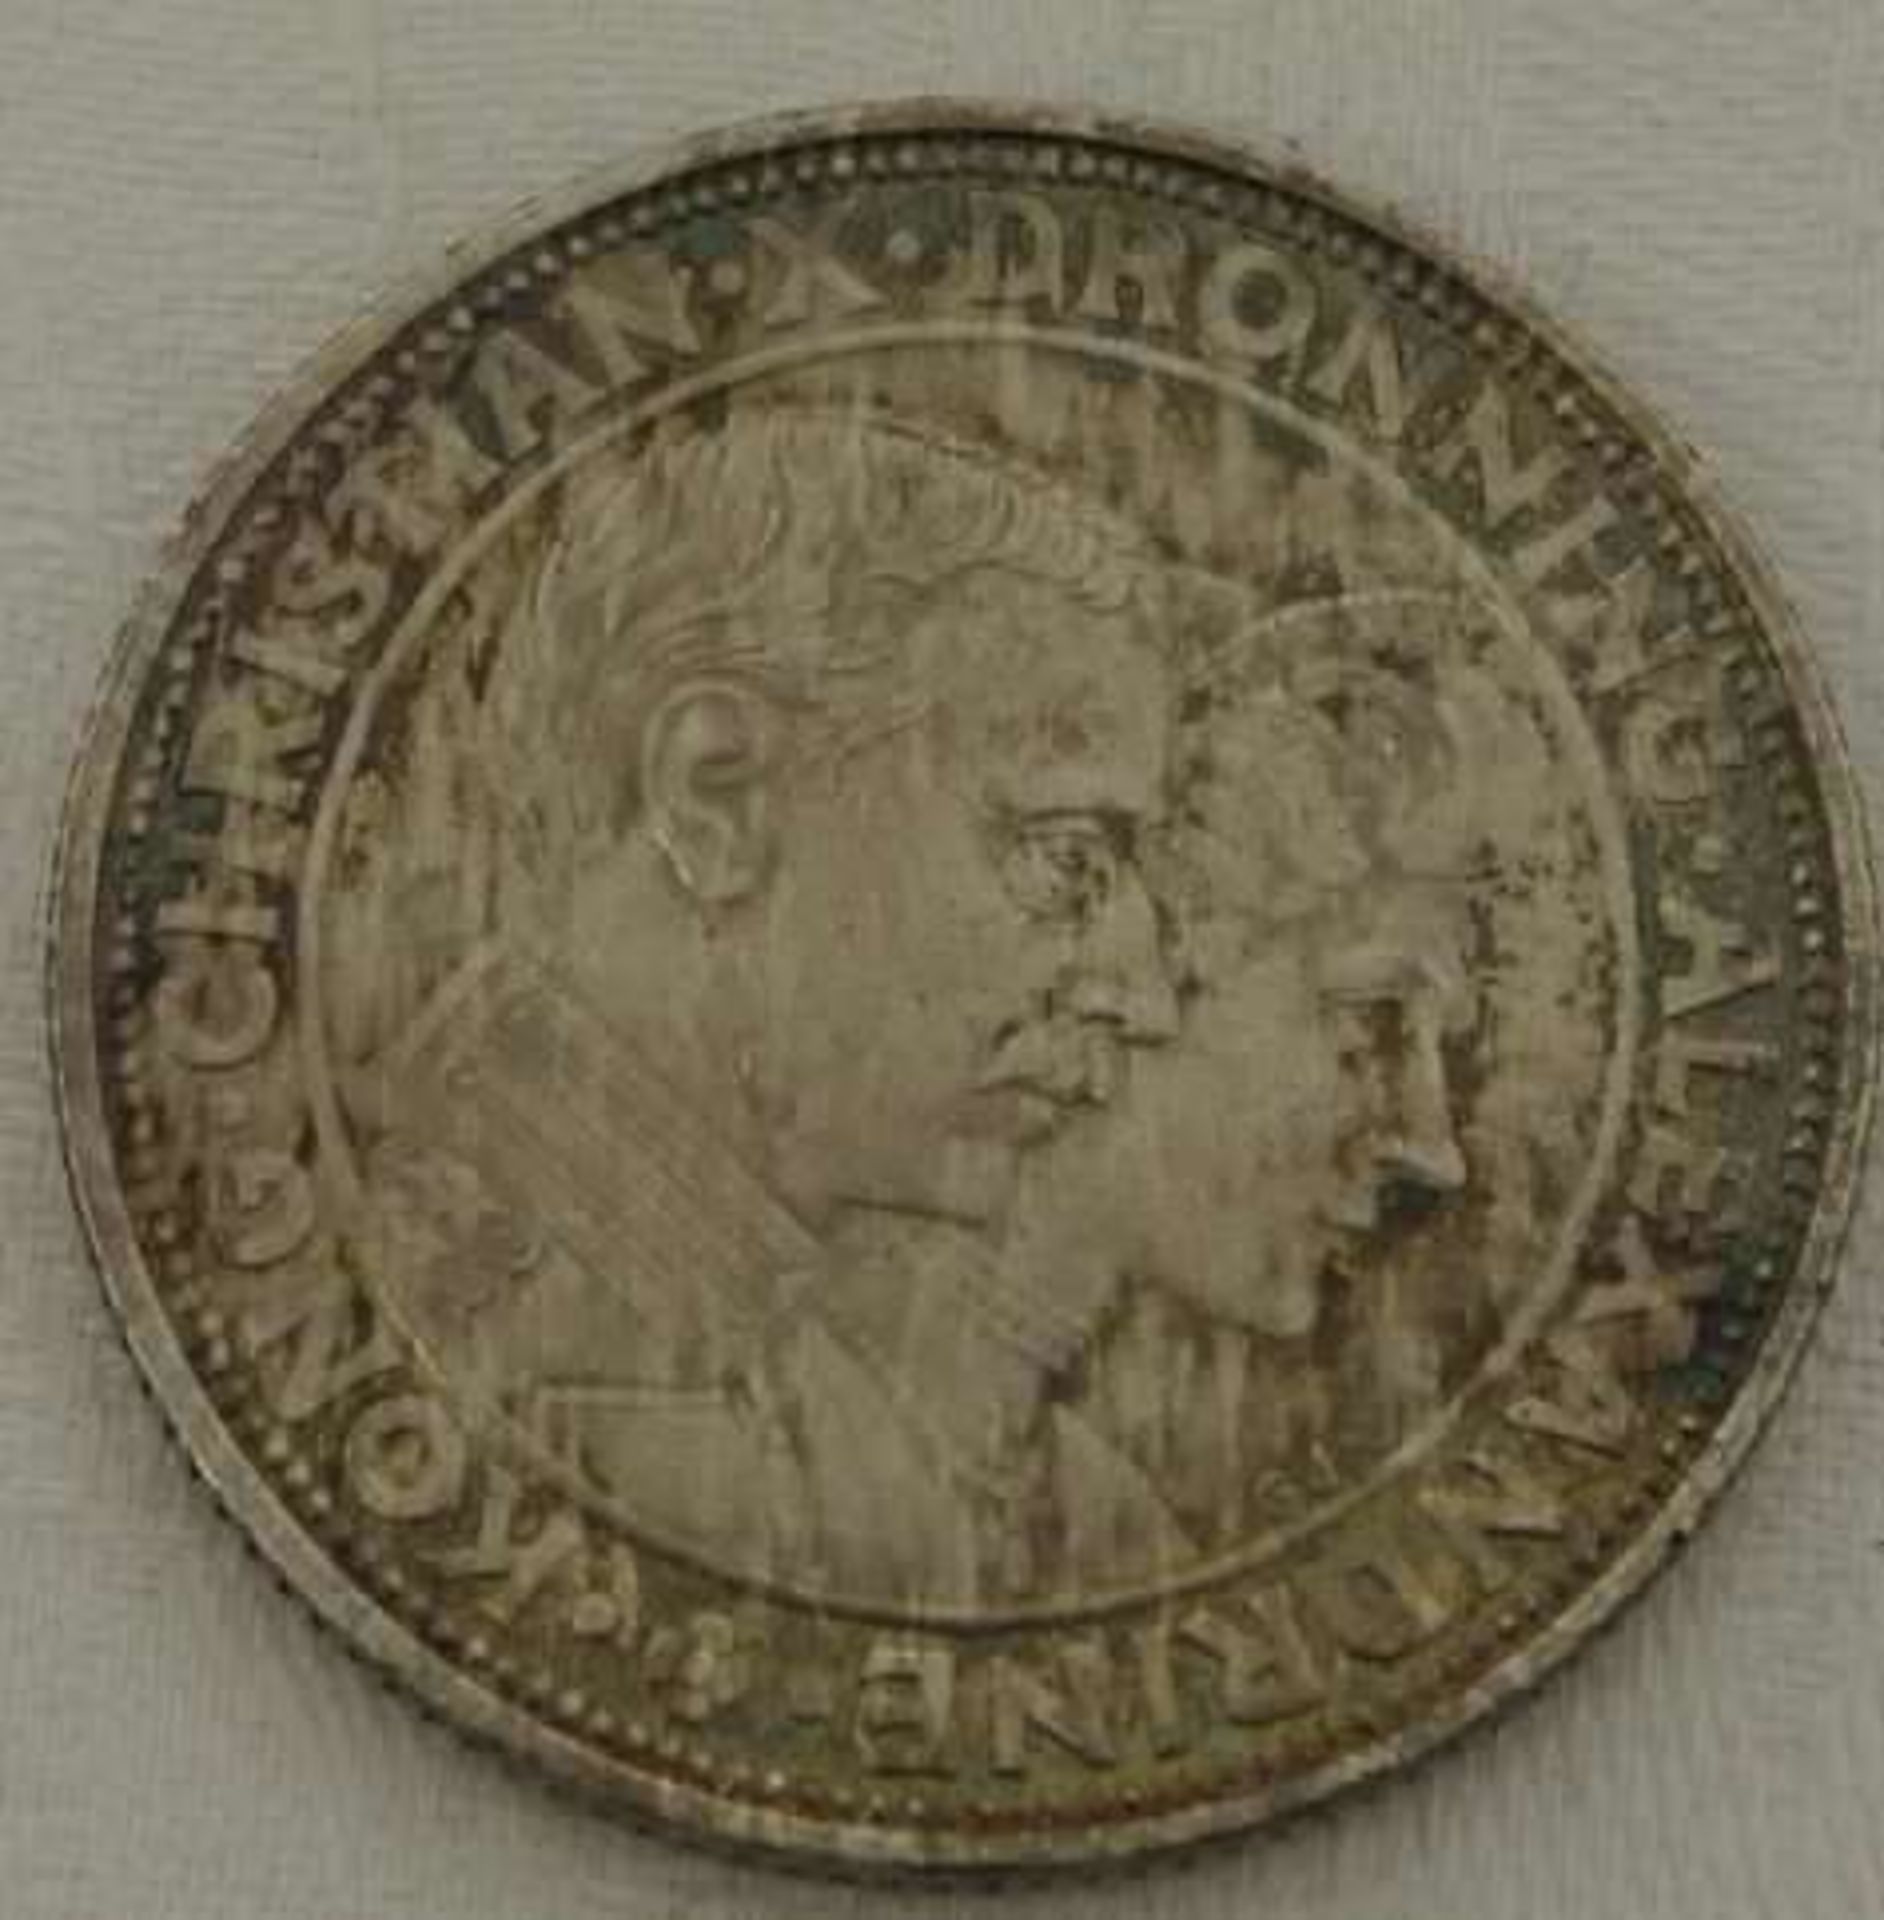 Dänemark, 1923 Silberhochzeit des Königspaares, 2 Kronen, Silber - Bild 2 aus 2